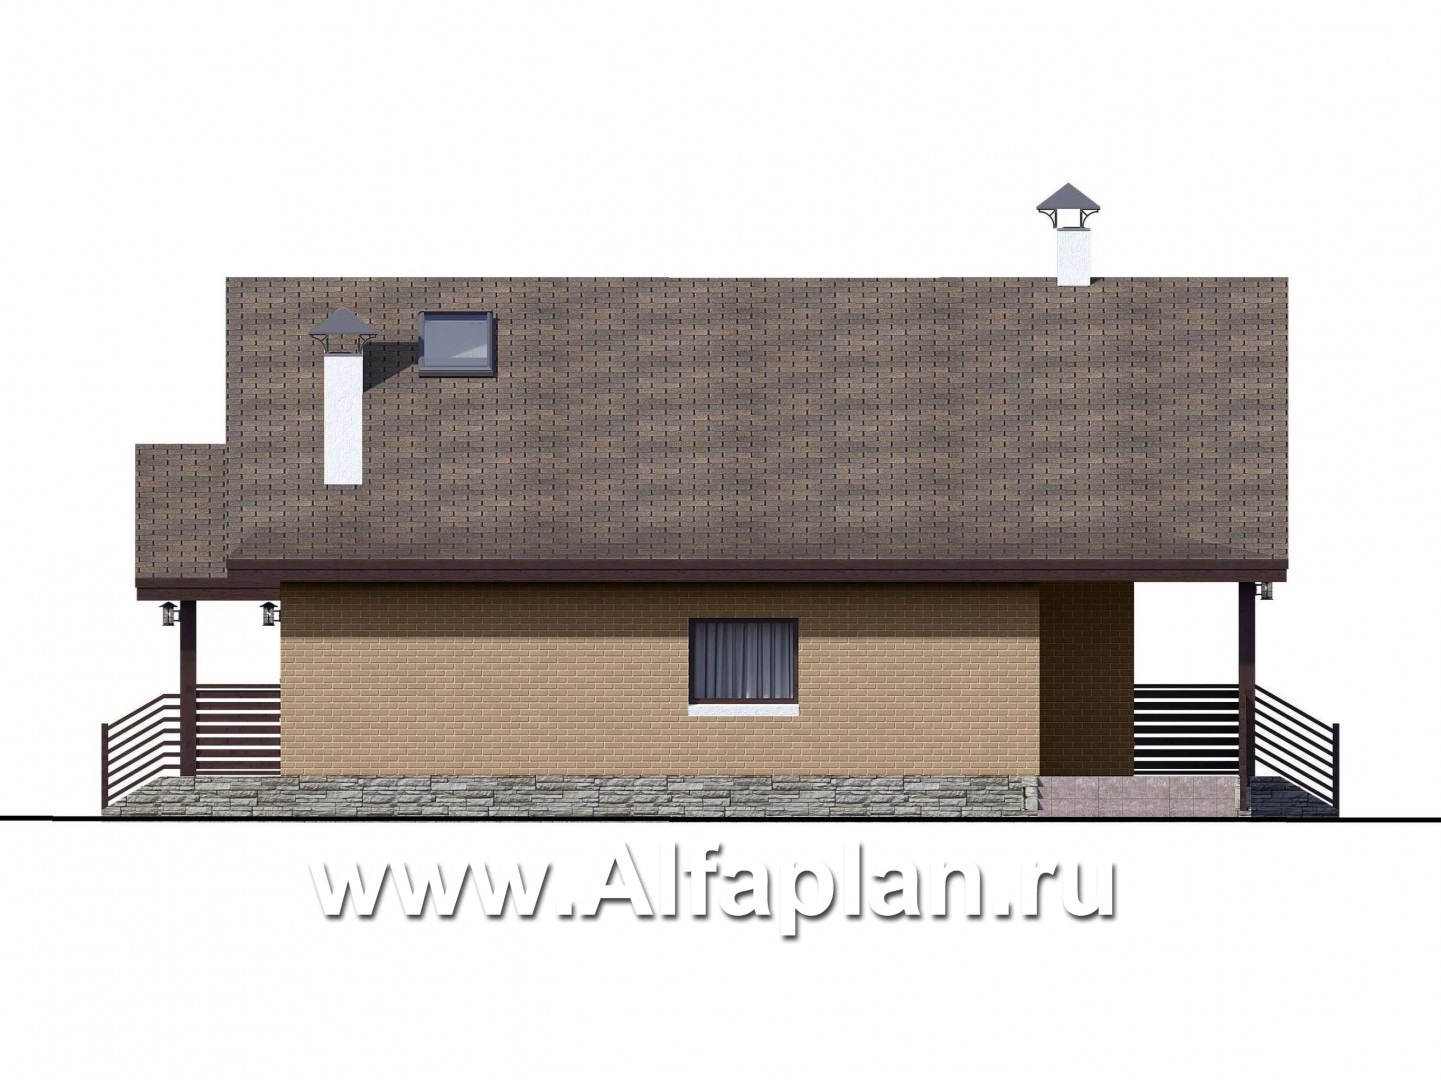 «Моризо» - проект дома с мансардой, планировка с двусветной гостиной и 2 спальни на 1 эт, шале с двускатной крышей - фасад дома